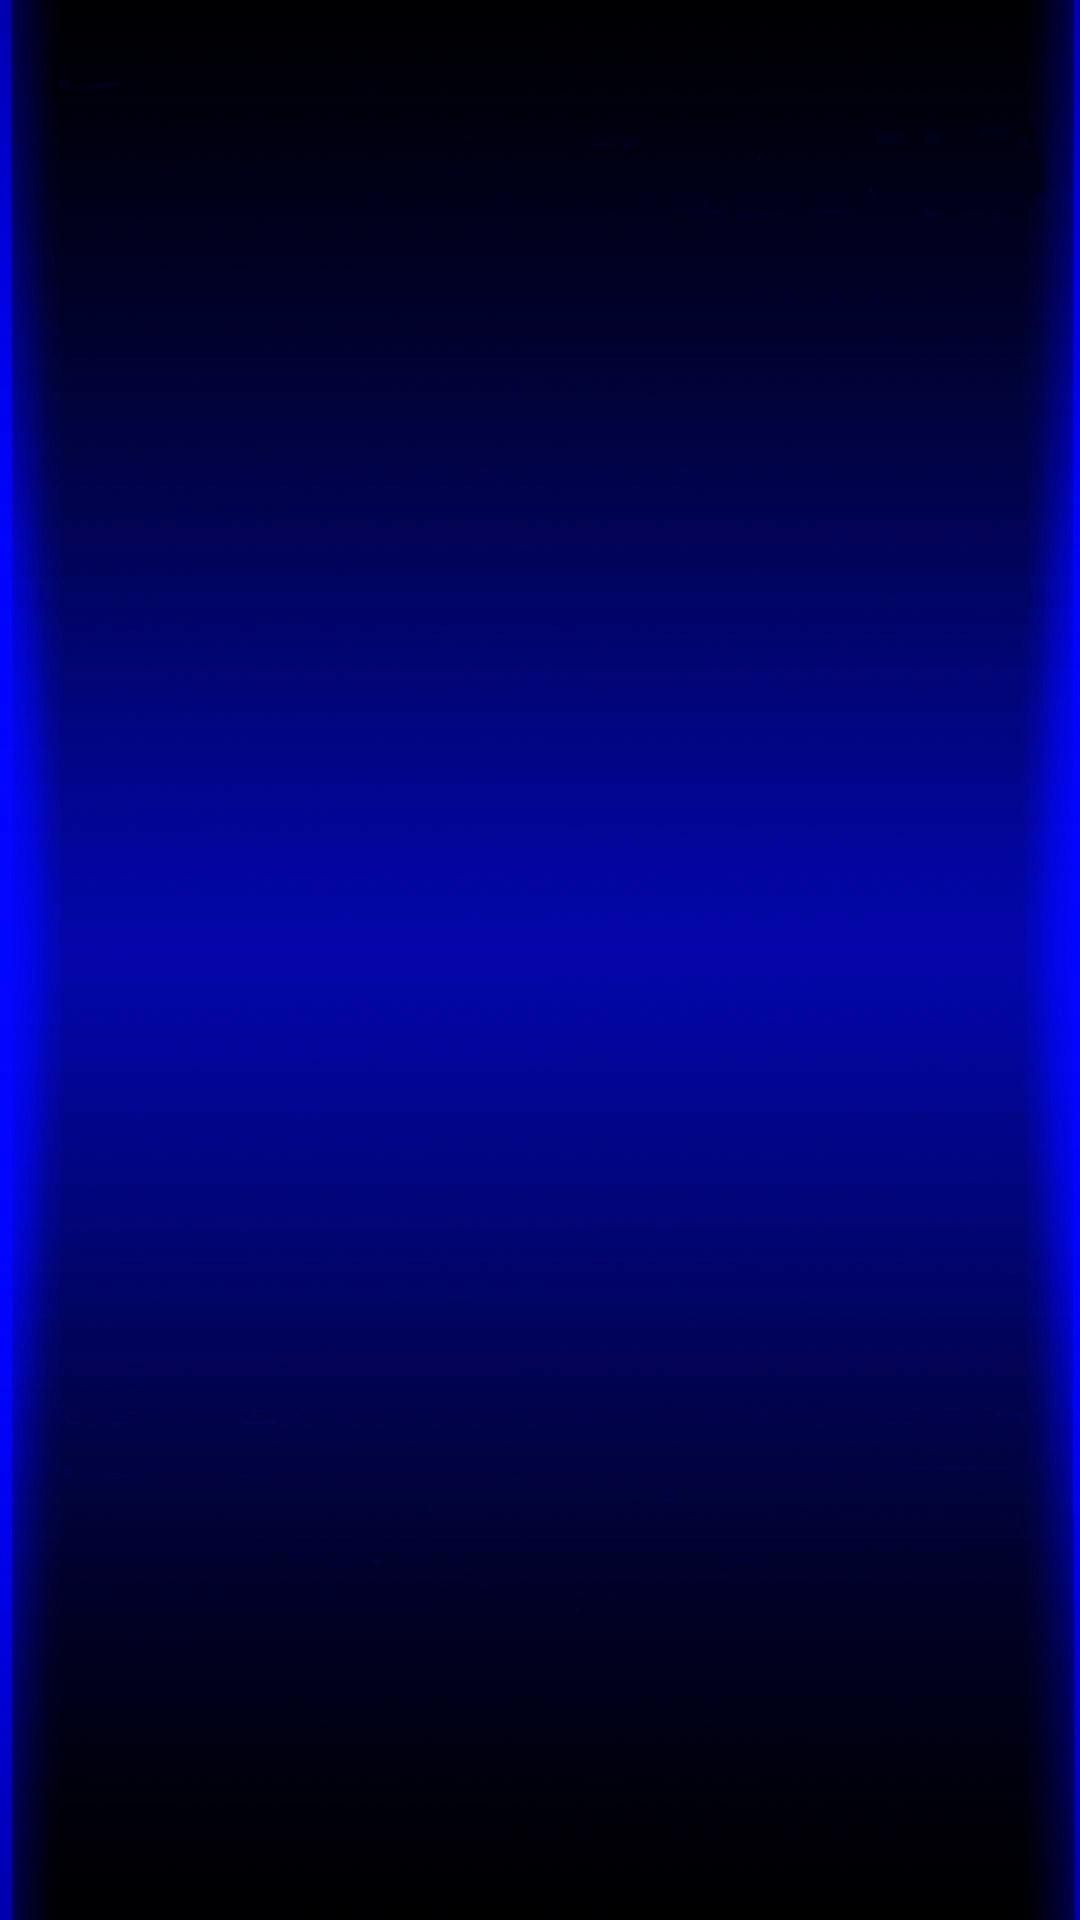 Blue Light Wallpaper Hd - HD Wallpaper 